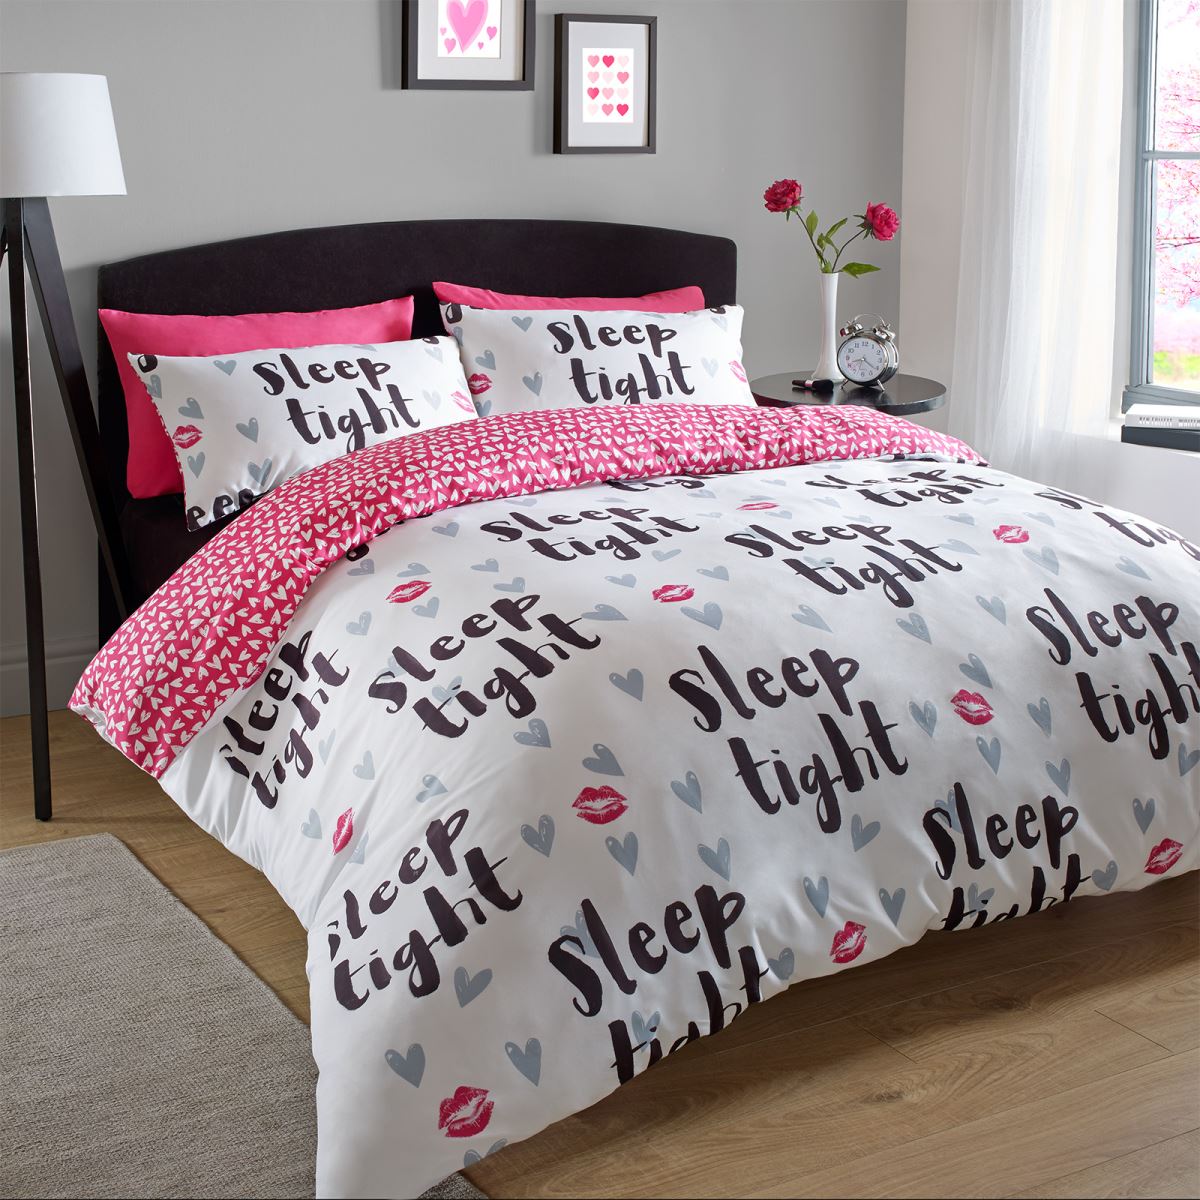 Những đặc điểm mà một chiếc giường ngủ tình yêu cần phải có liệu bạn đã biết?